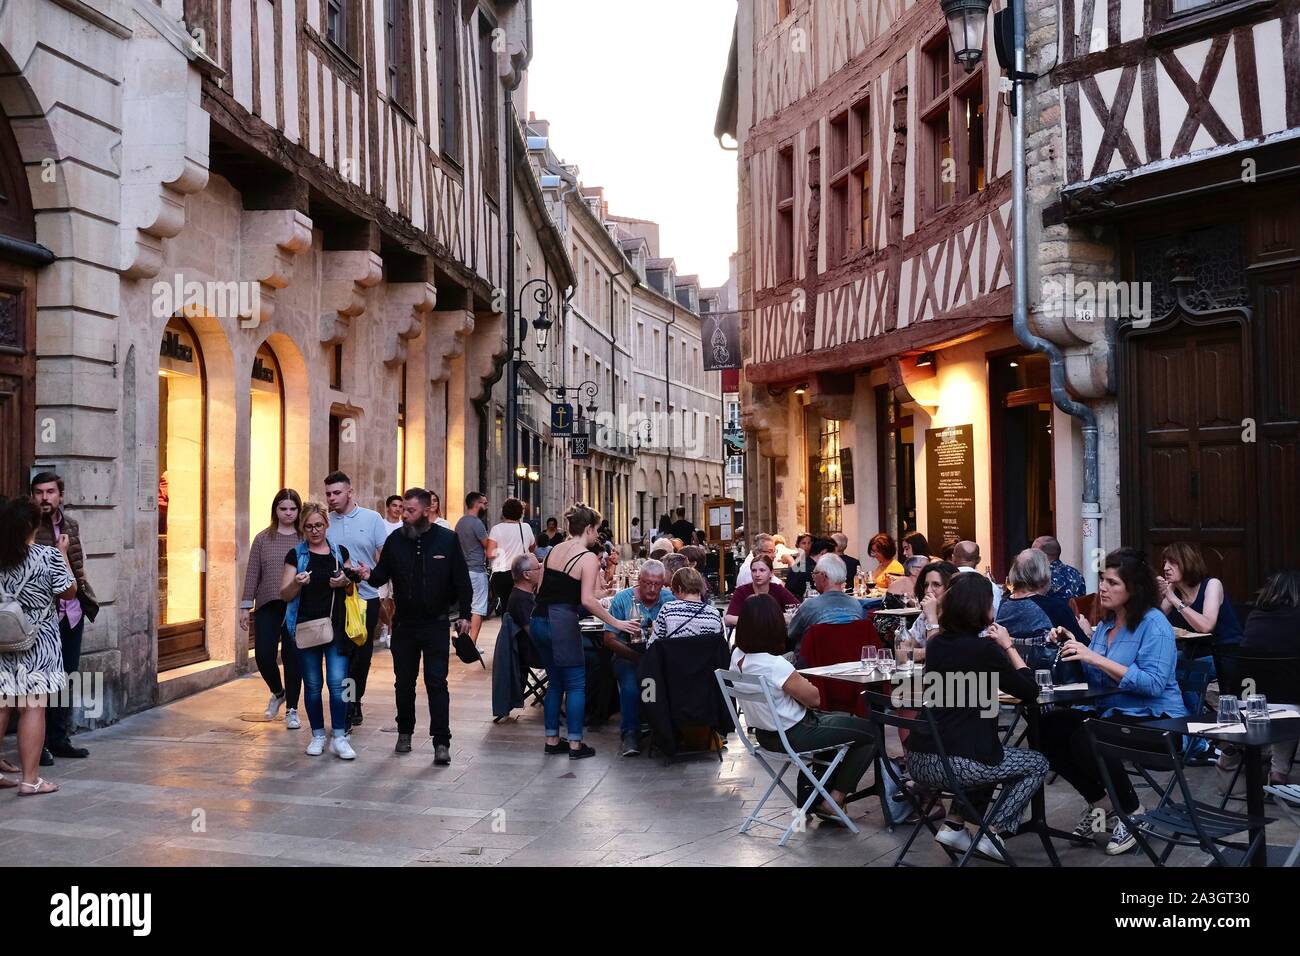 Francia, Cote d'Or, en la zona de Dijon, catalogado como Patrimonio Mundial por la UNESCO, Rue Amiral Roussin, terrazas y casas con entramados de madera Foto de stock